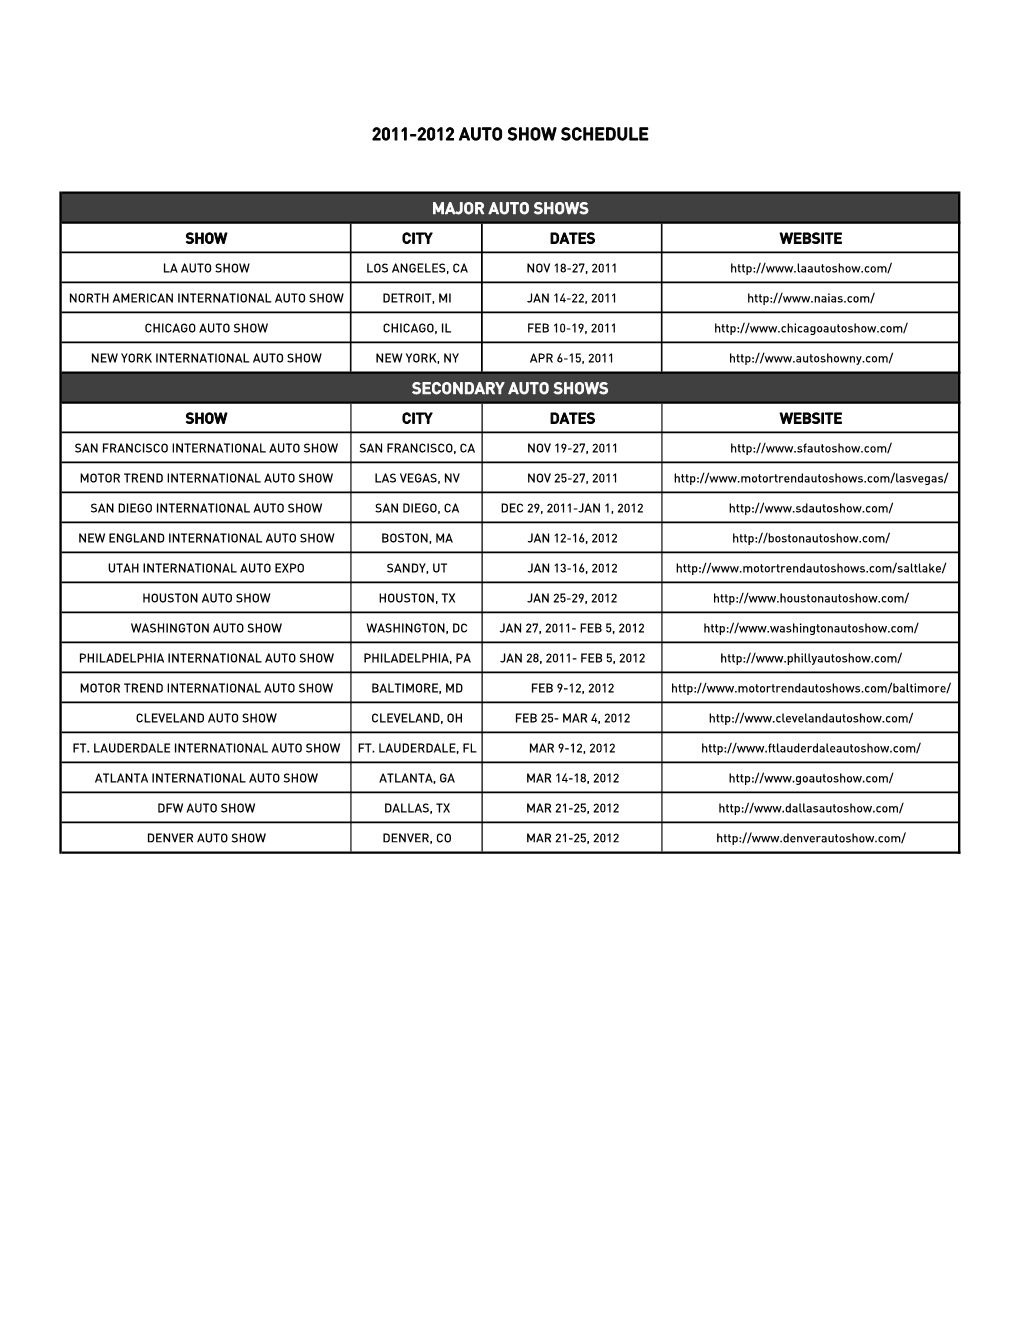 2011-2012 Auto Show Schedule